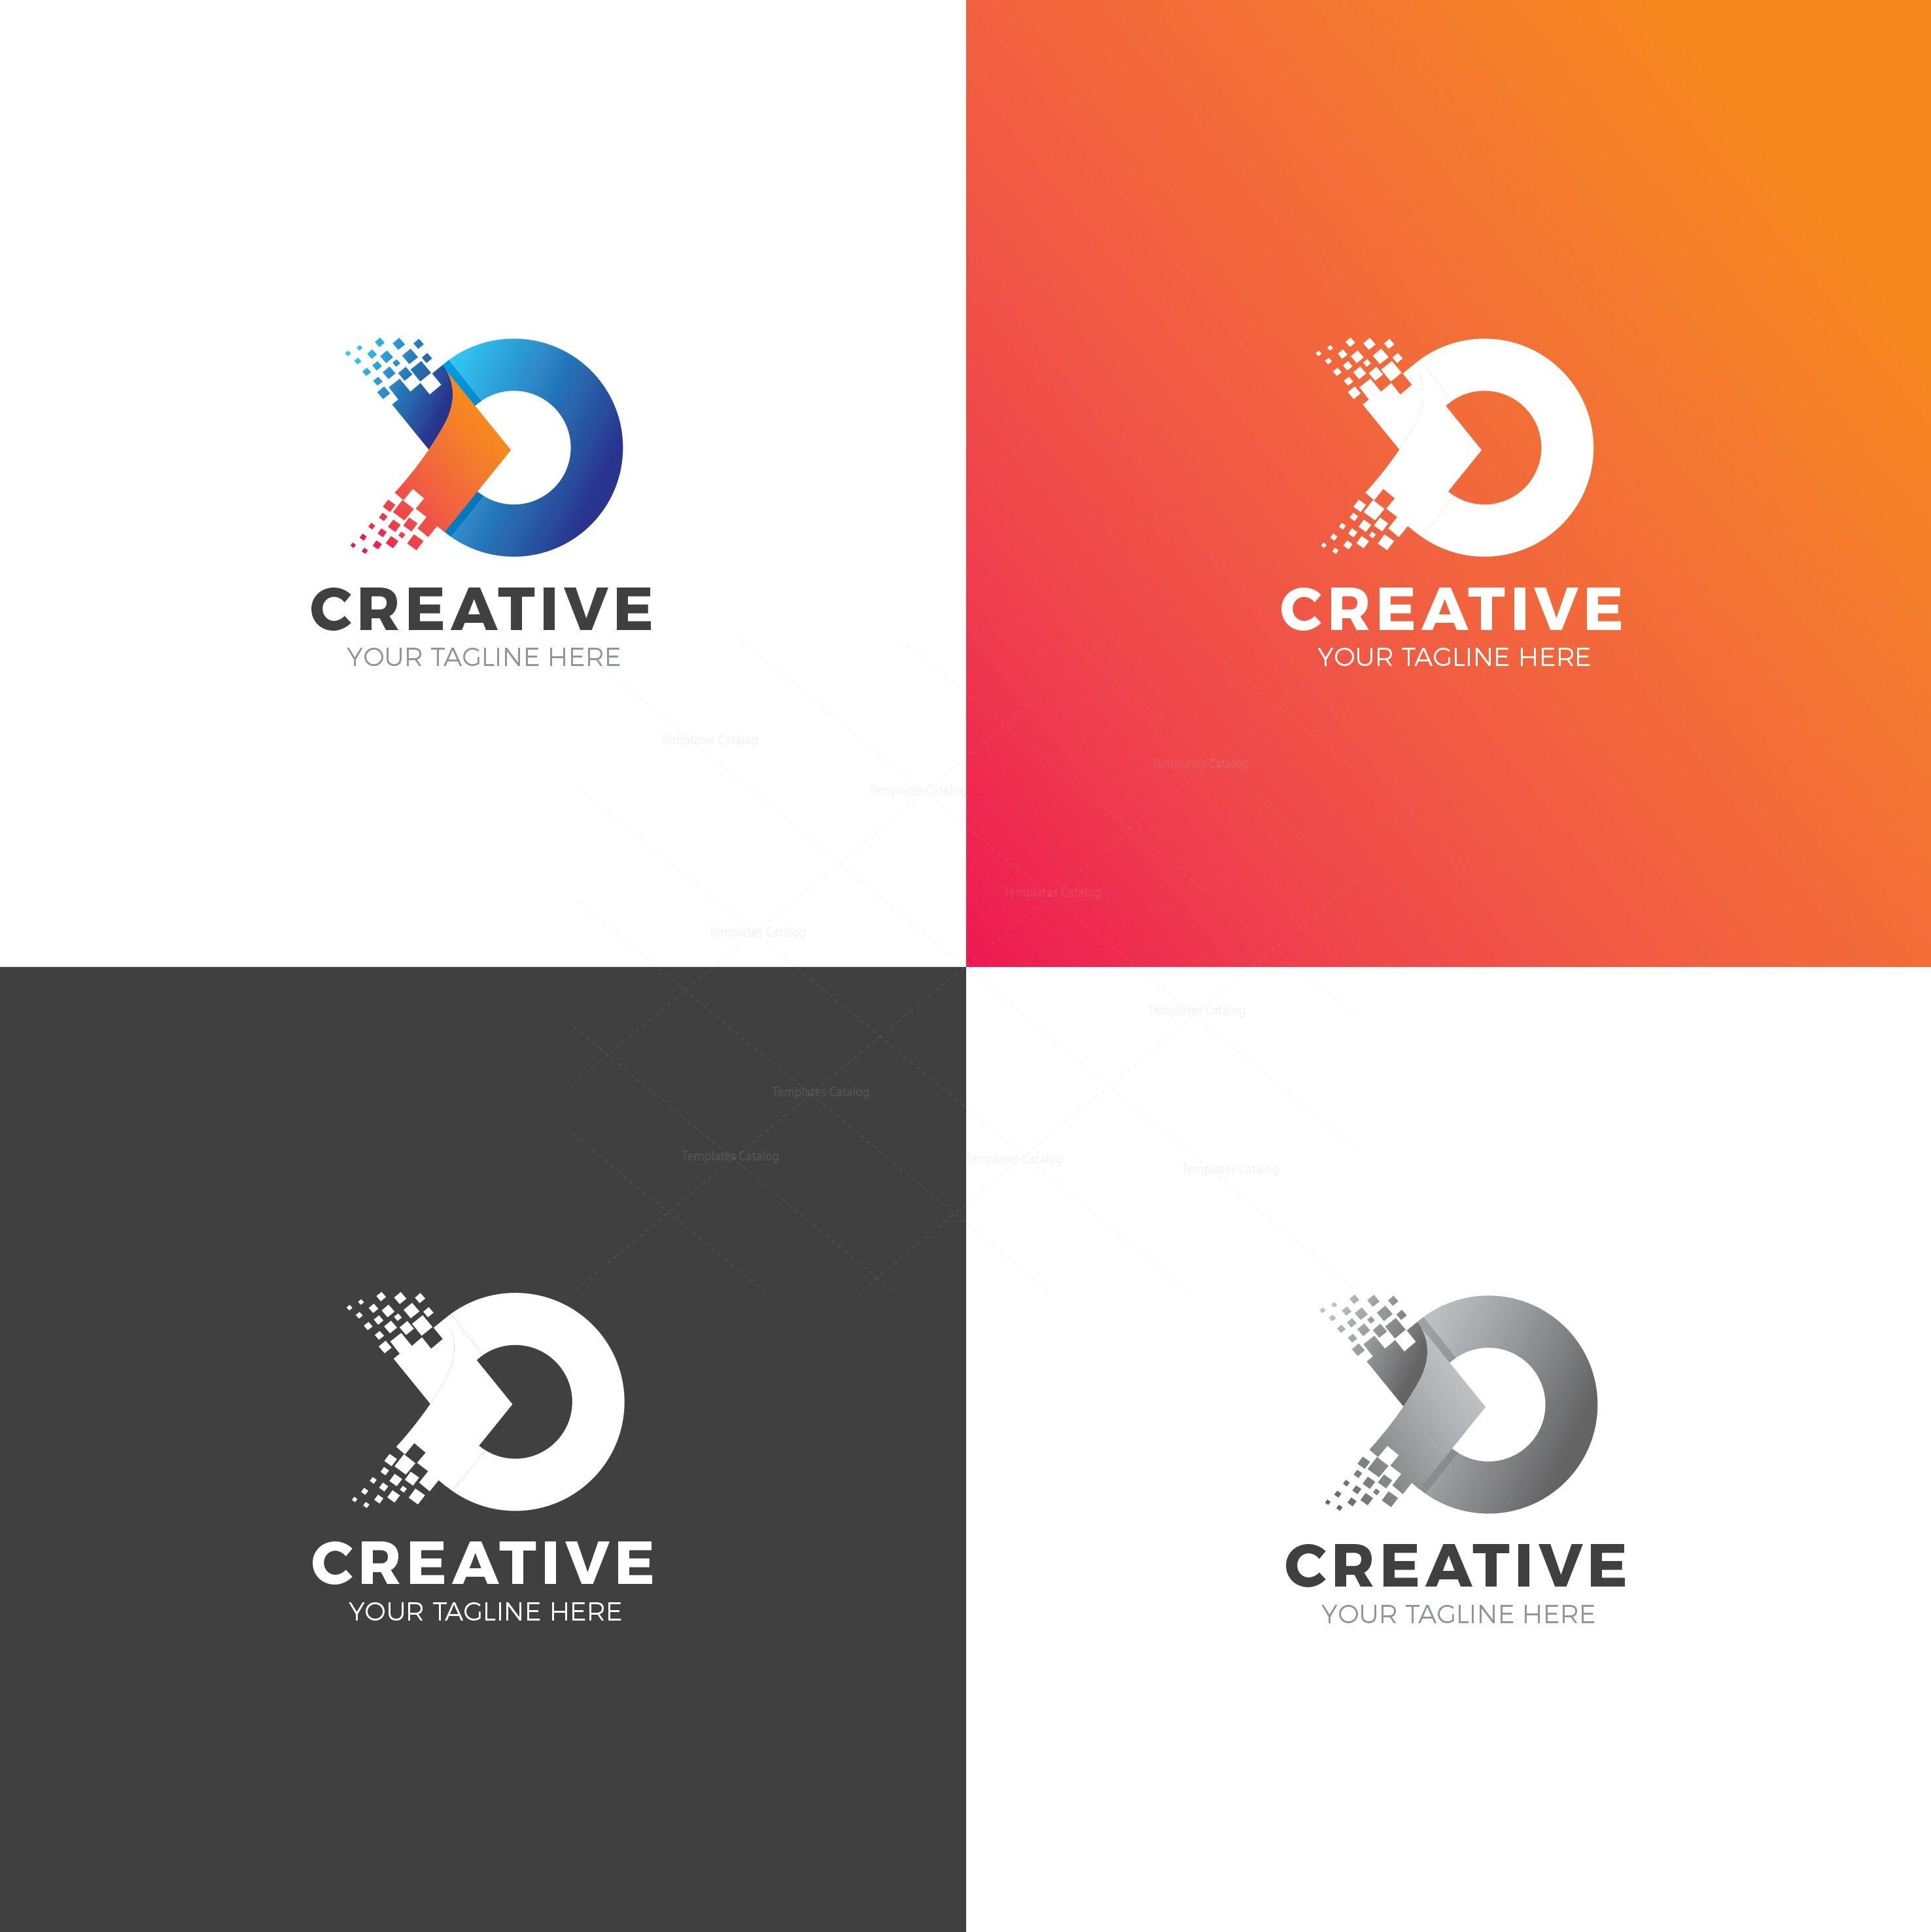 Bốn màu sắc khác nhau của logo công ty